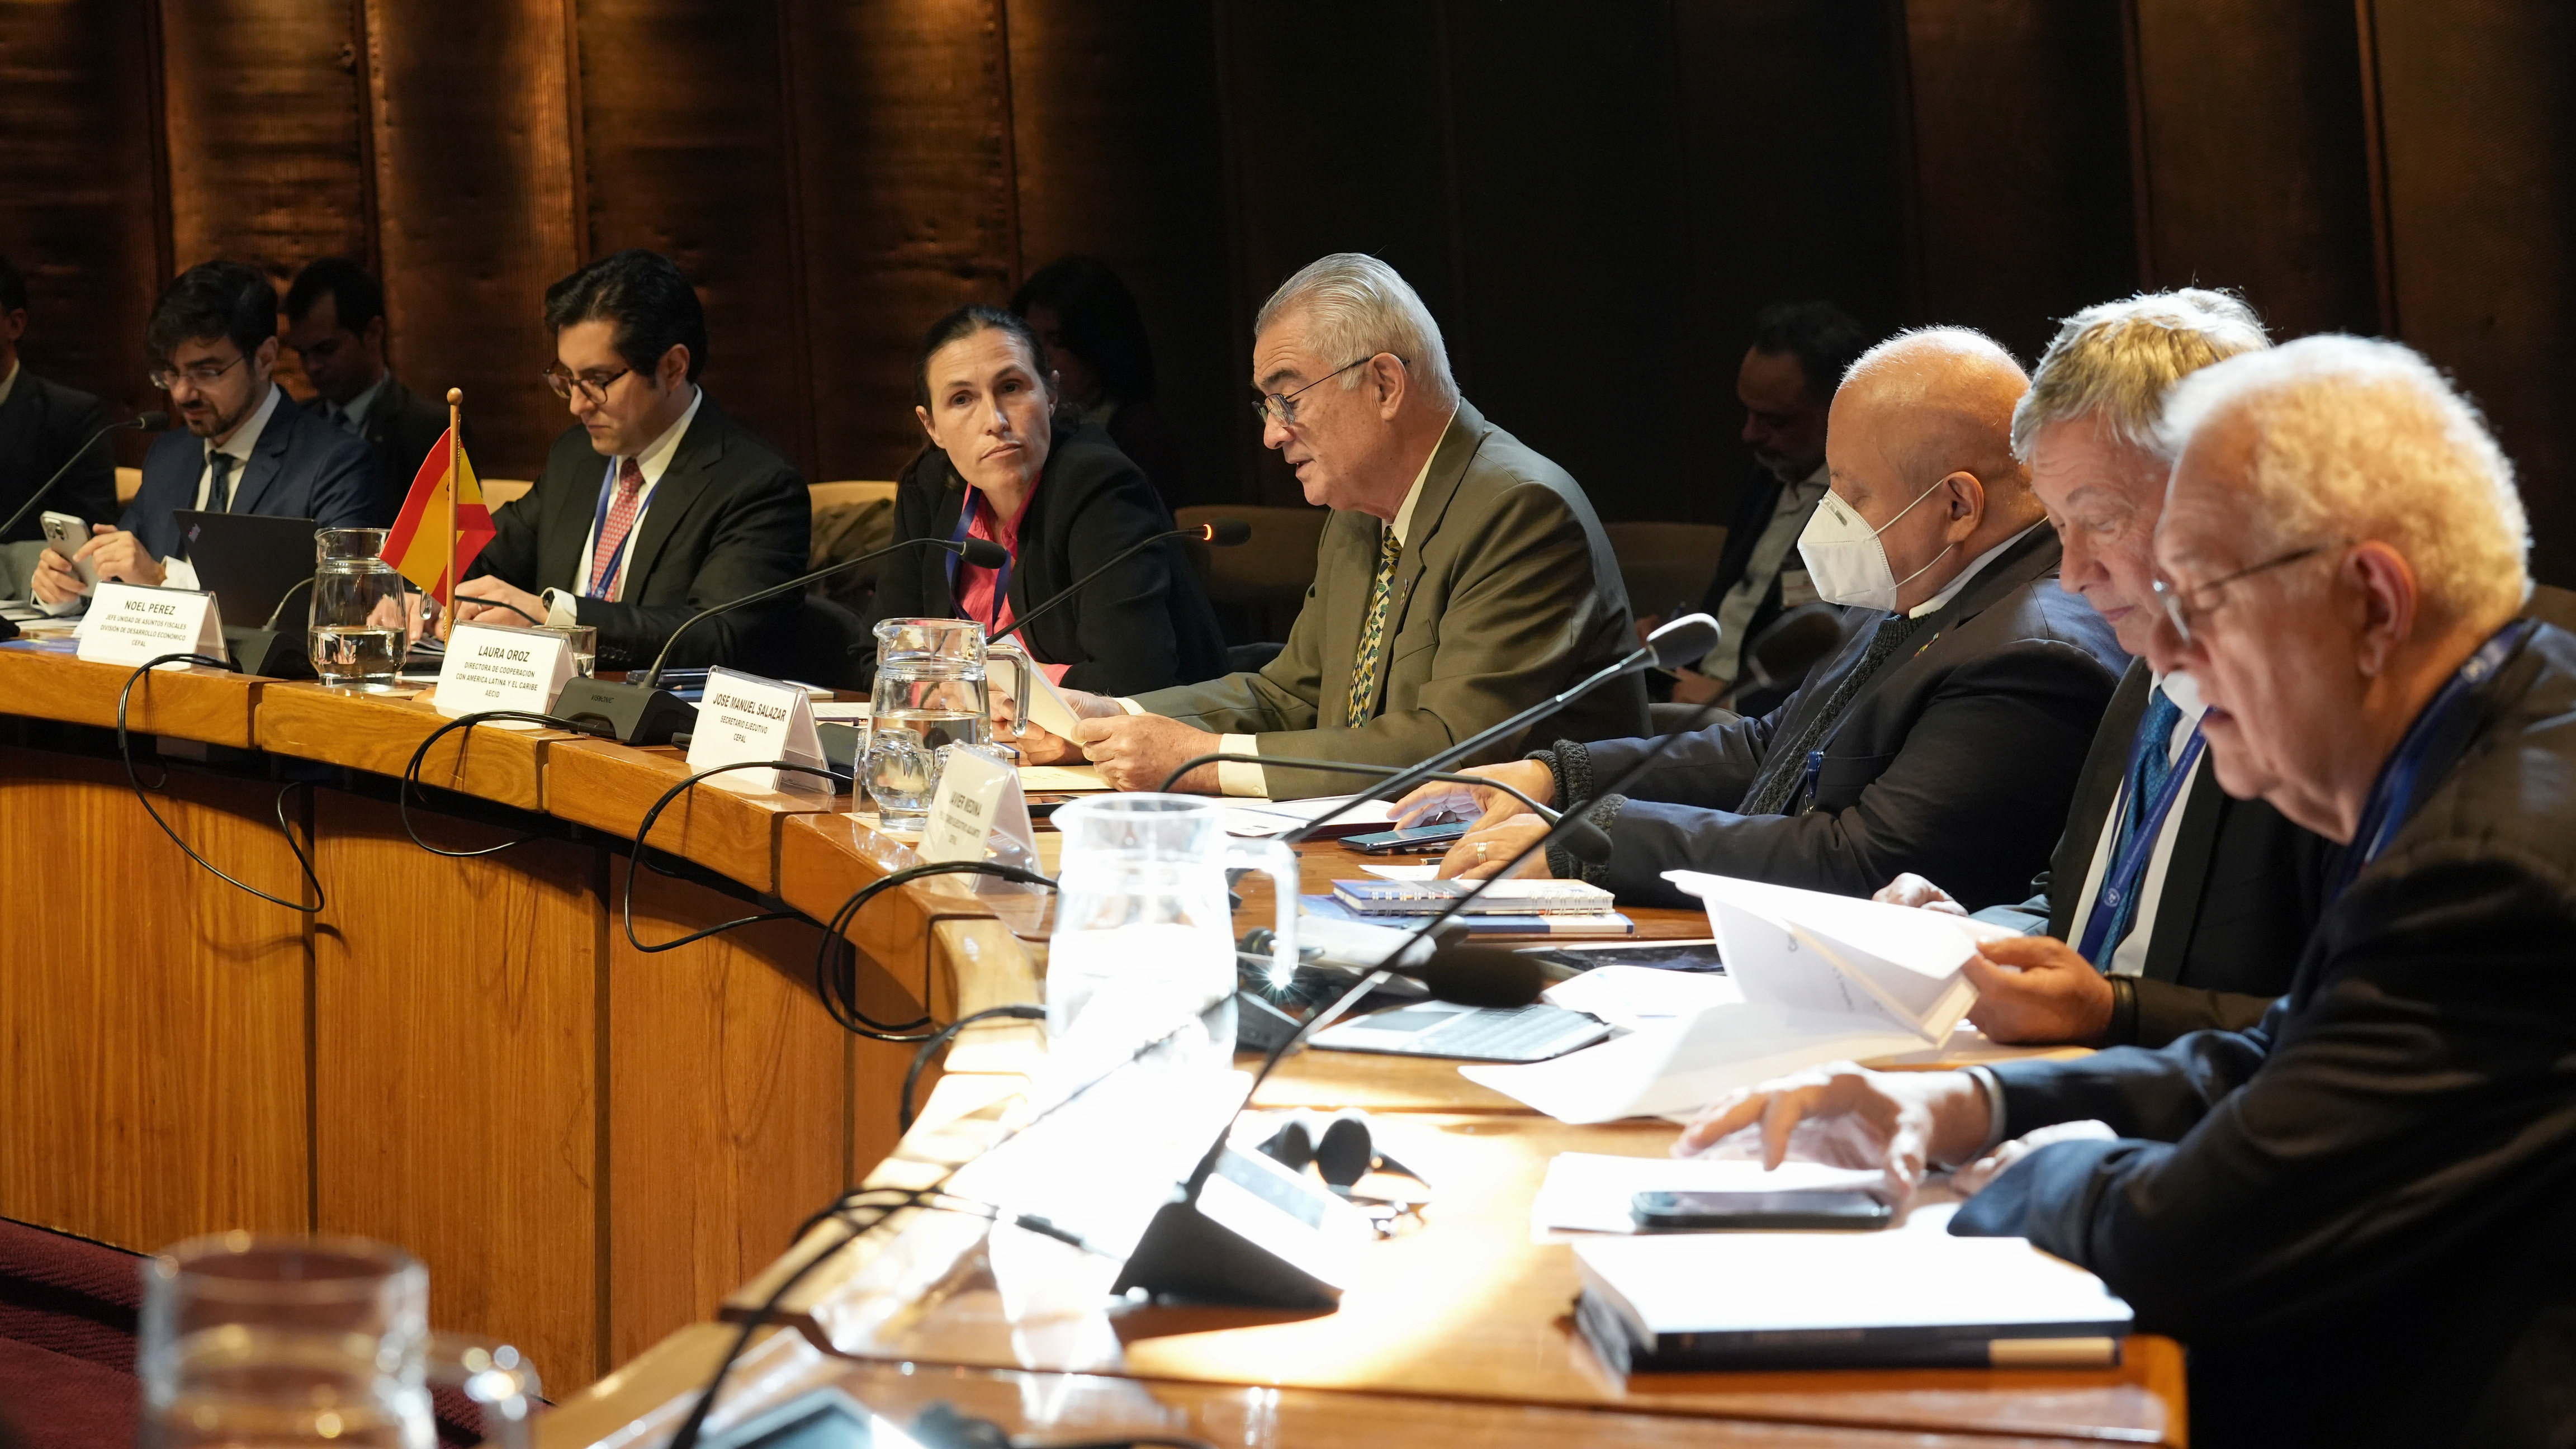 Fotografía da mesa principal do XXXVI Seminário Regional de Política Fiscal